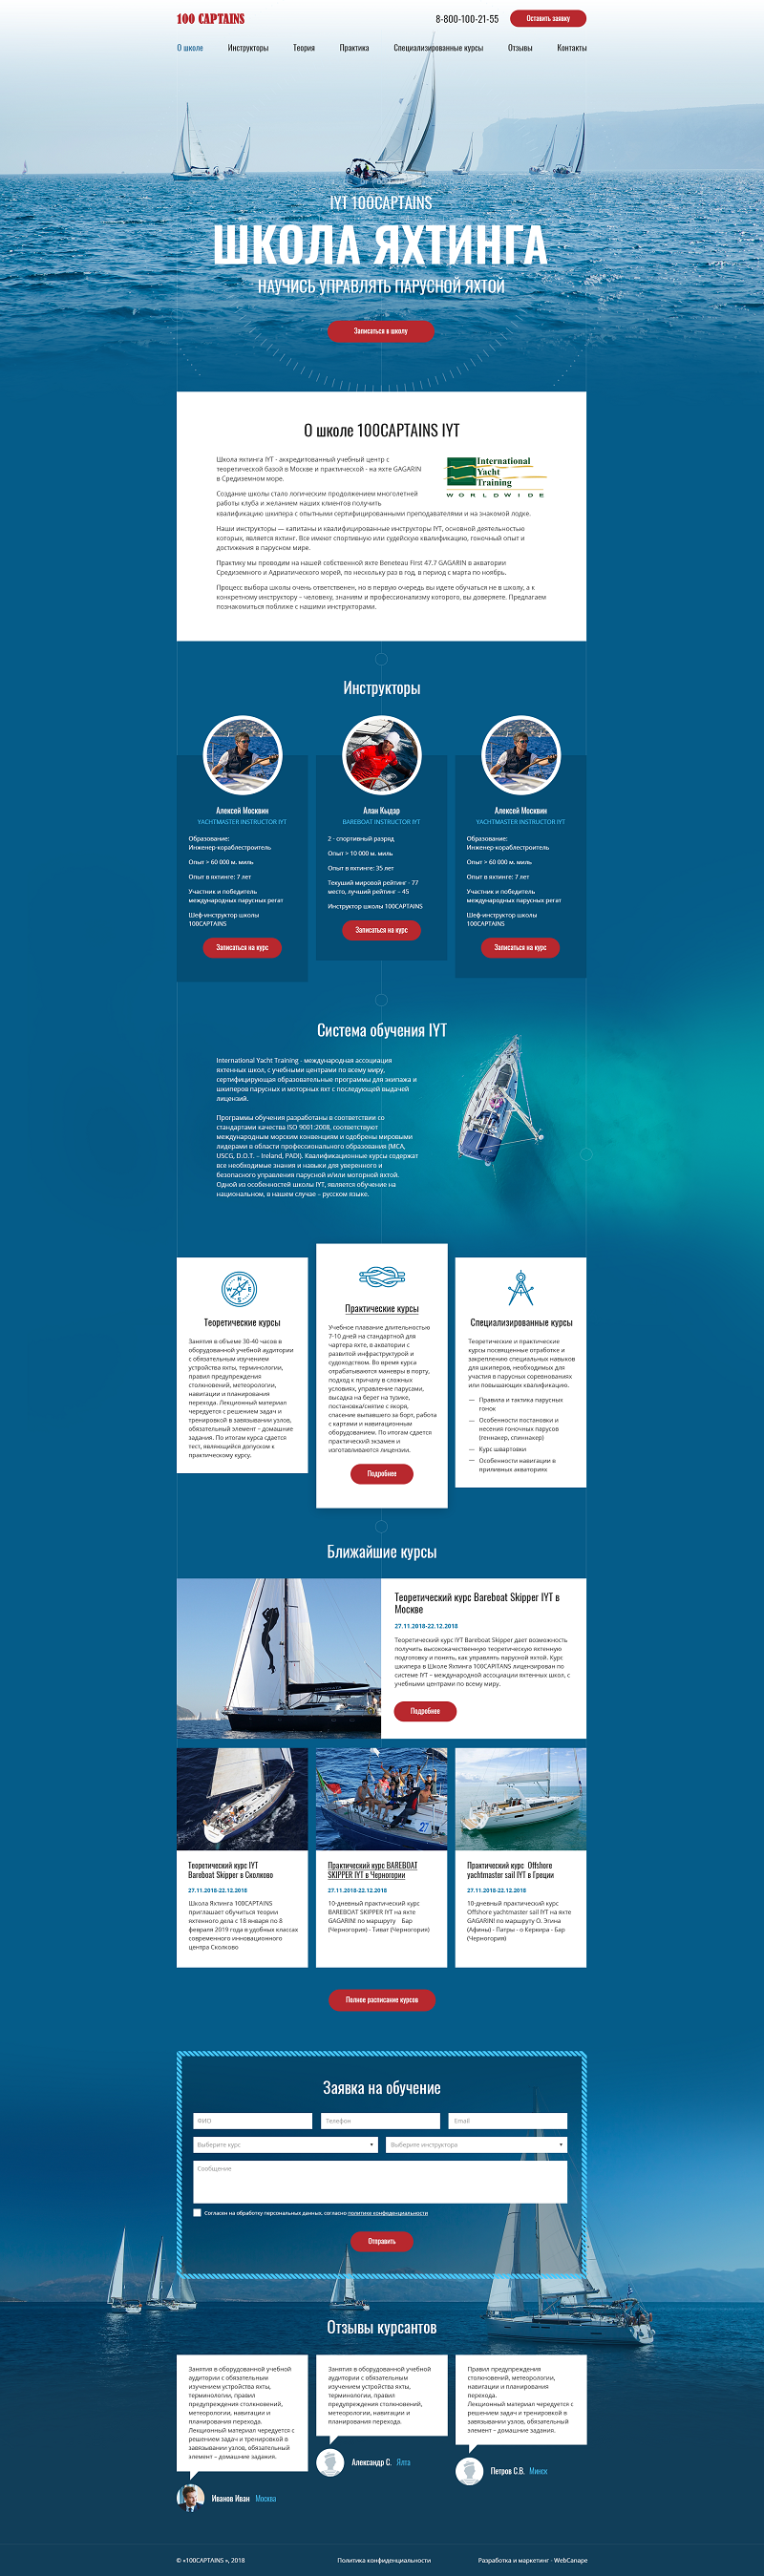 Разработка сайта для школы яхтинга